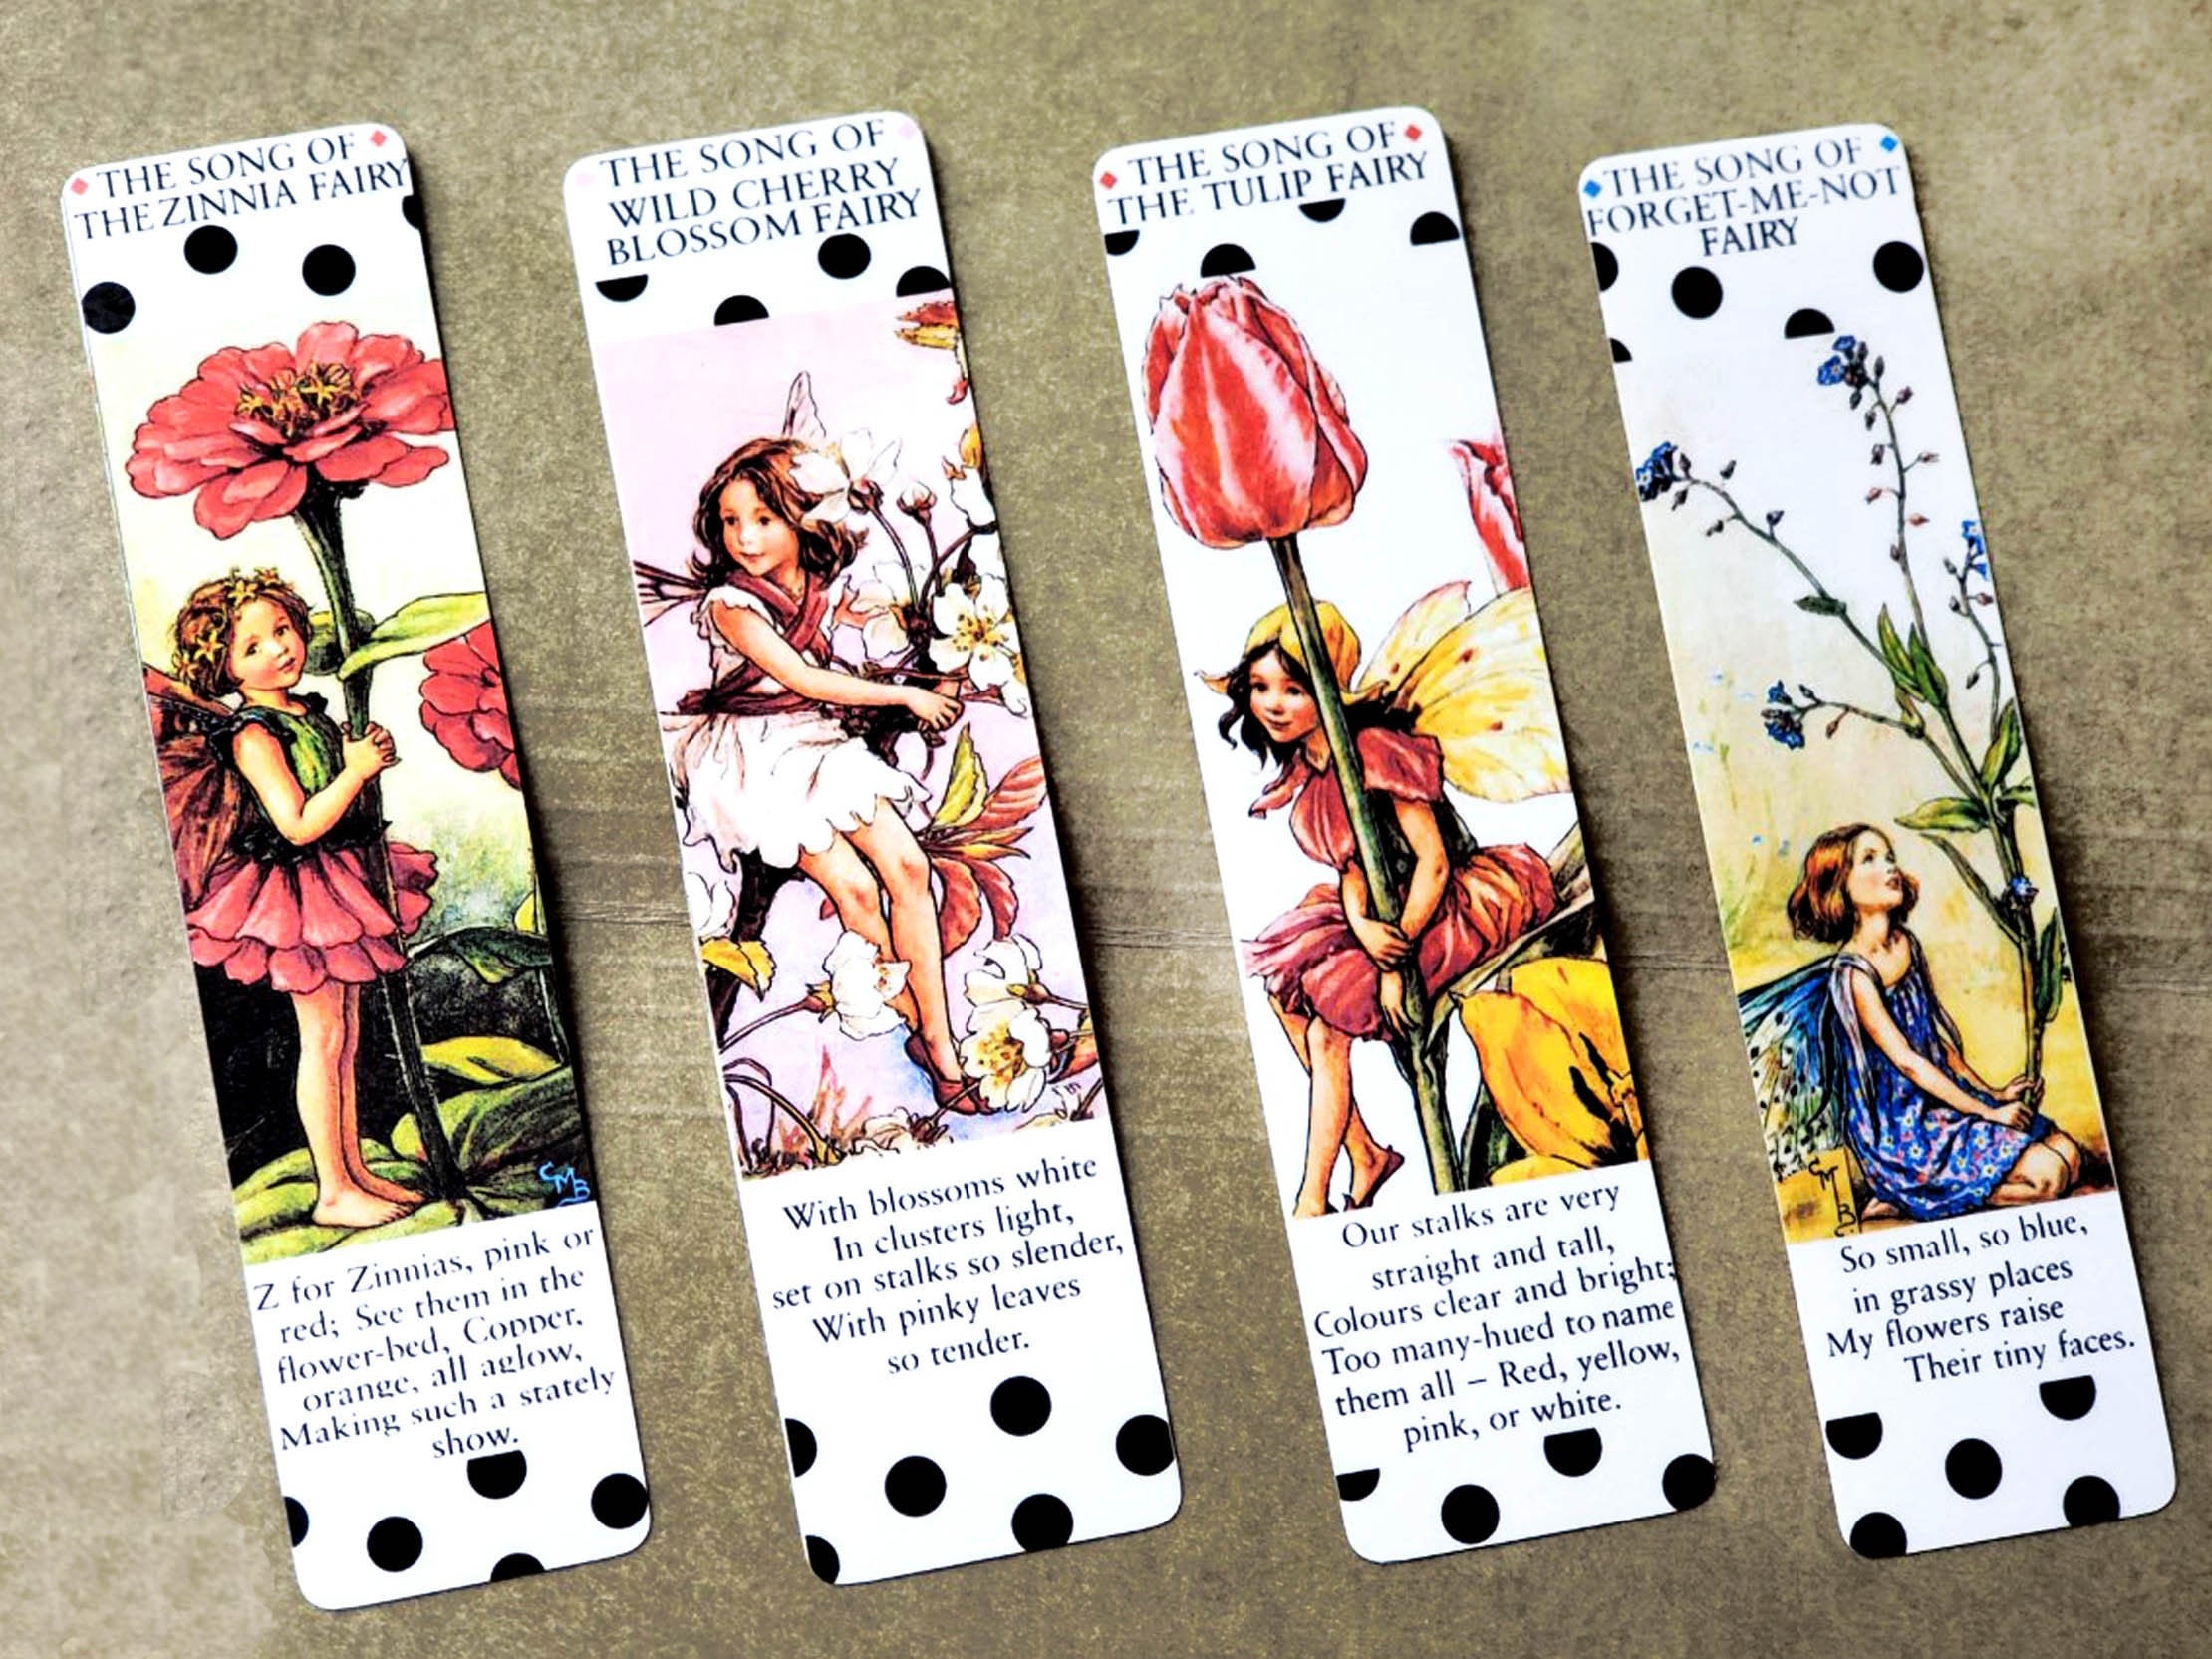 Fairy Bookmark Sublimation Bundle